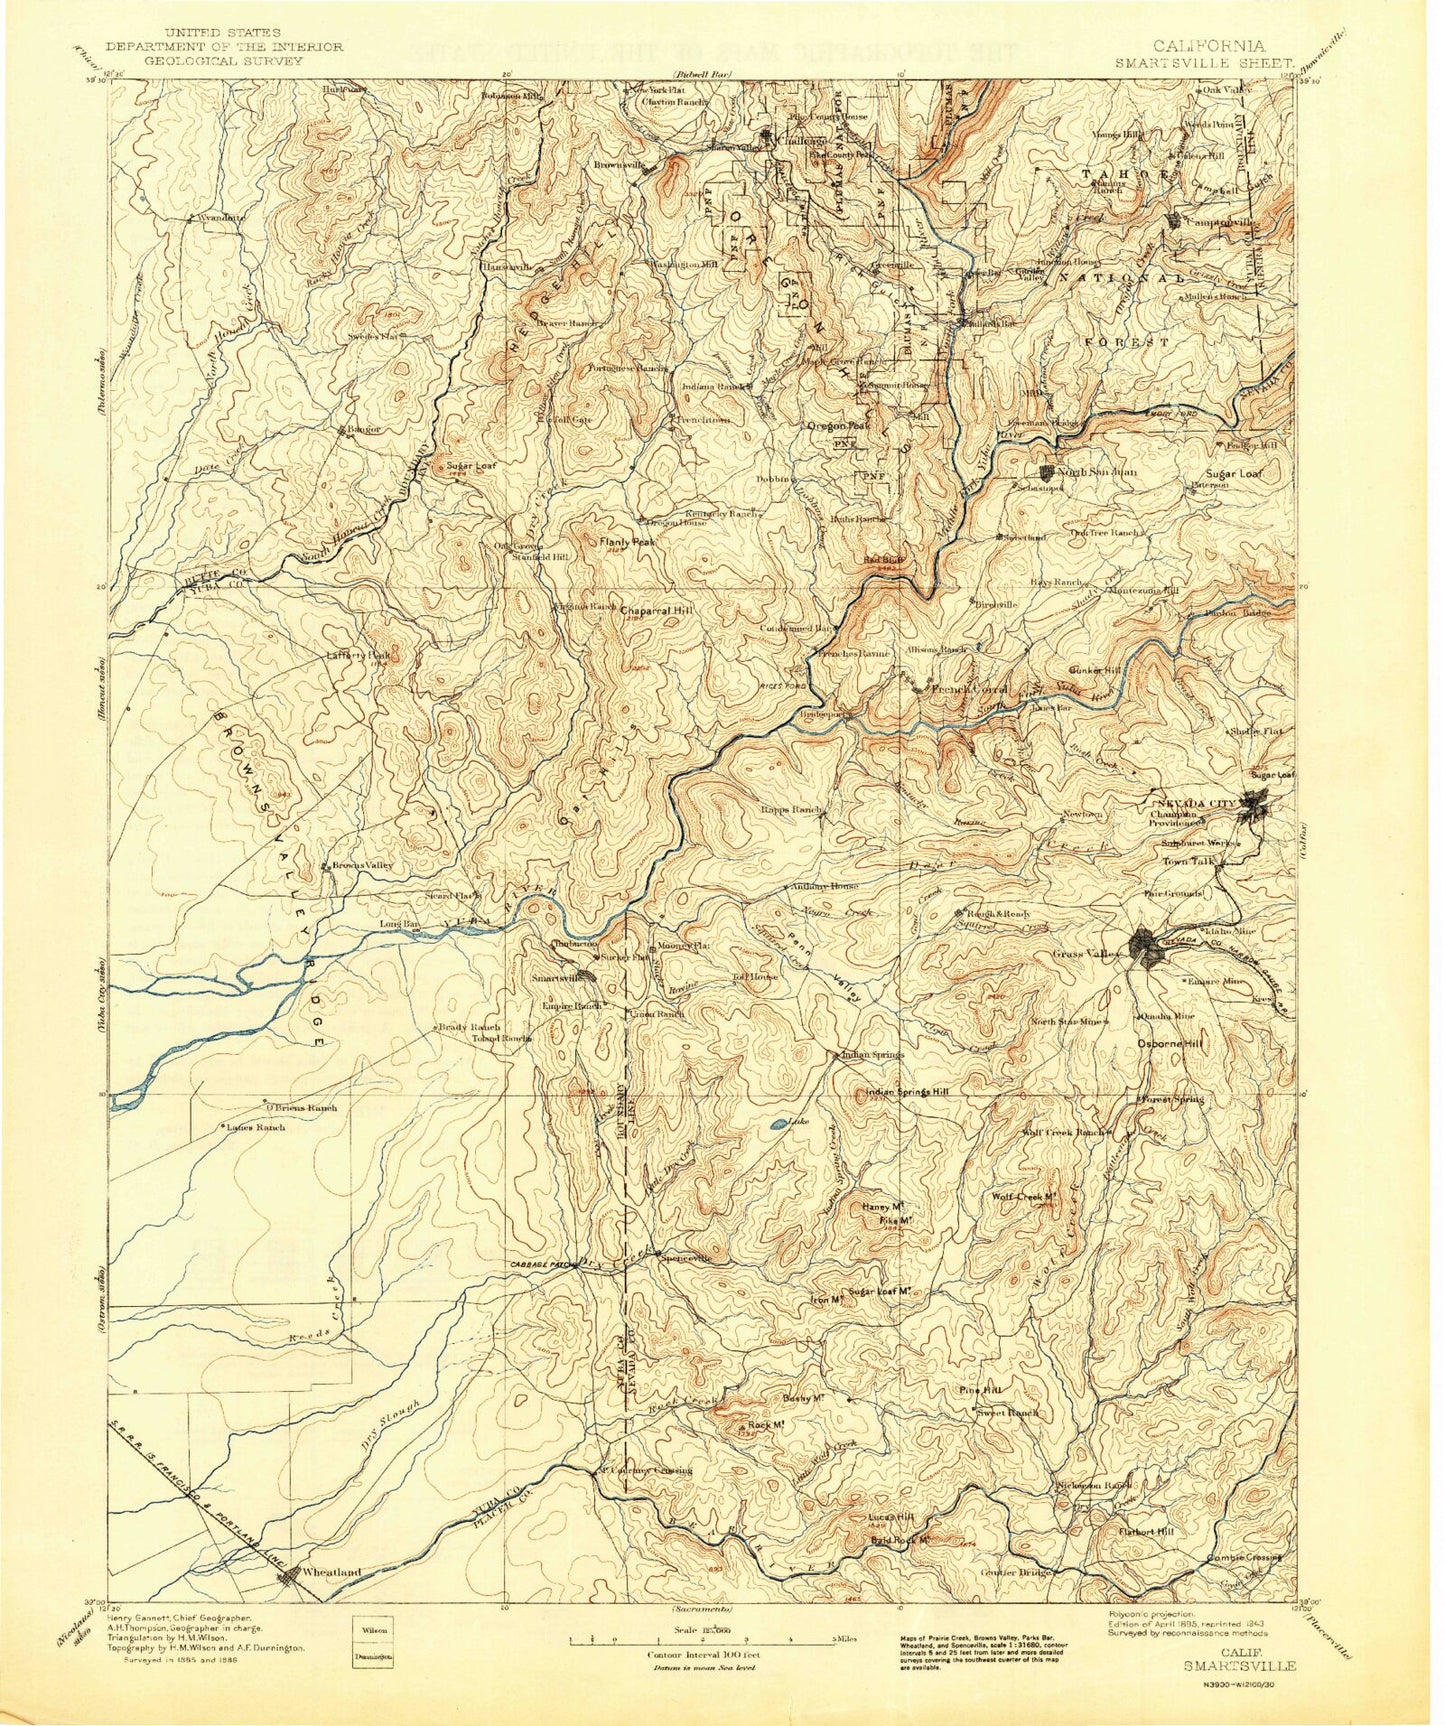 Historic 1895 Smartsville California 30'x30' Topo Map Image